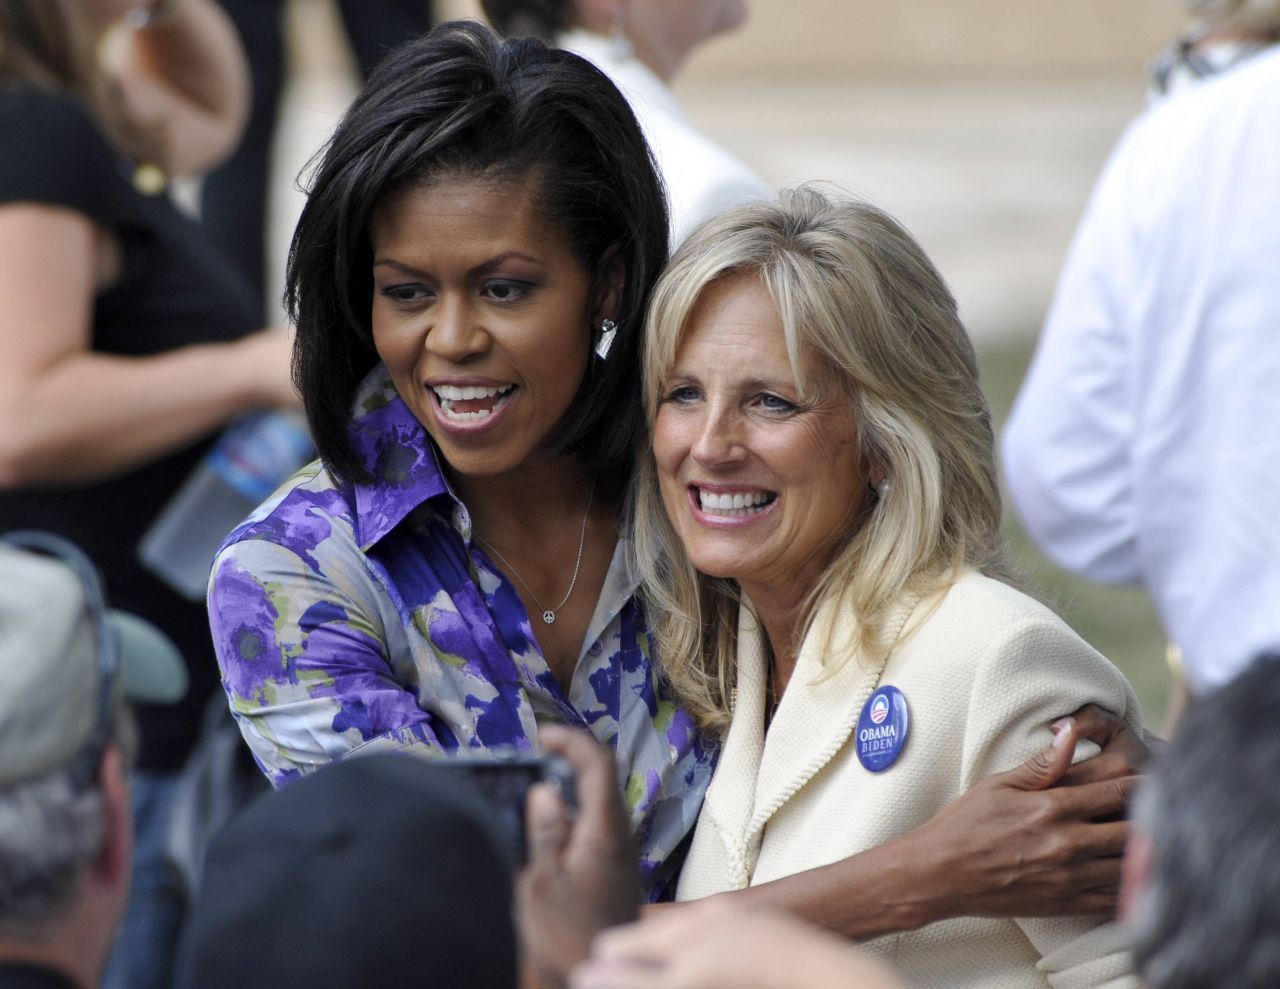 2008 beginnt für die Second Lady Jill Biden eine achtjährige und sehr enge Zusammenarbeit mit First Lady Michelle Obama. 